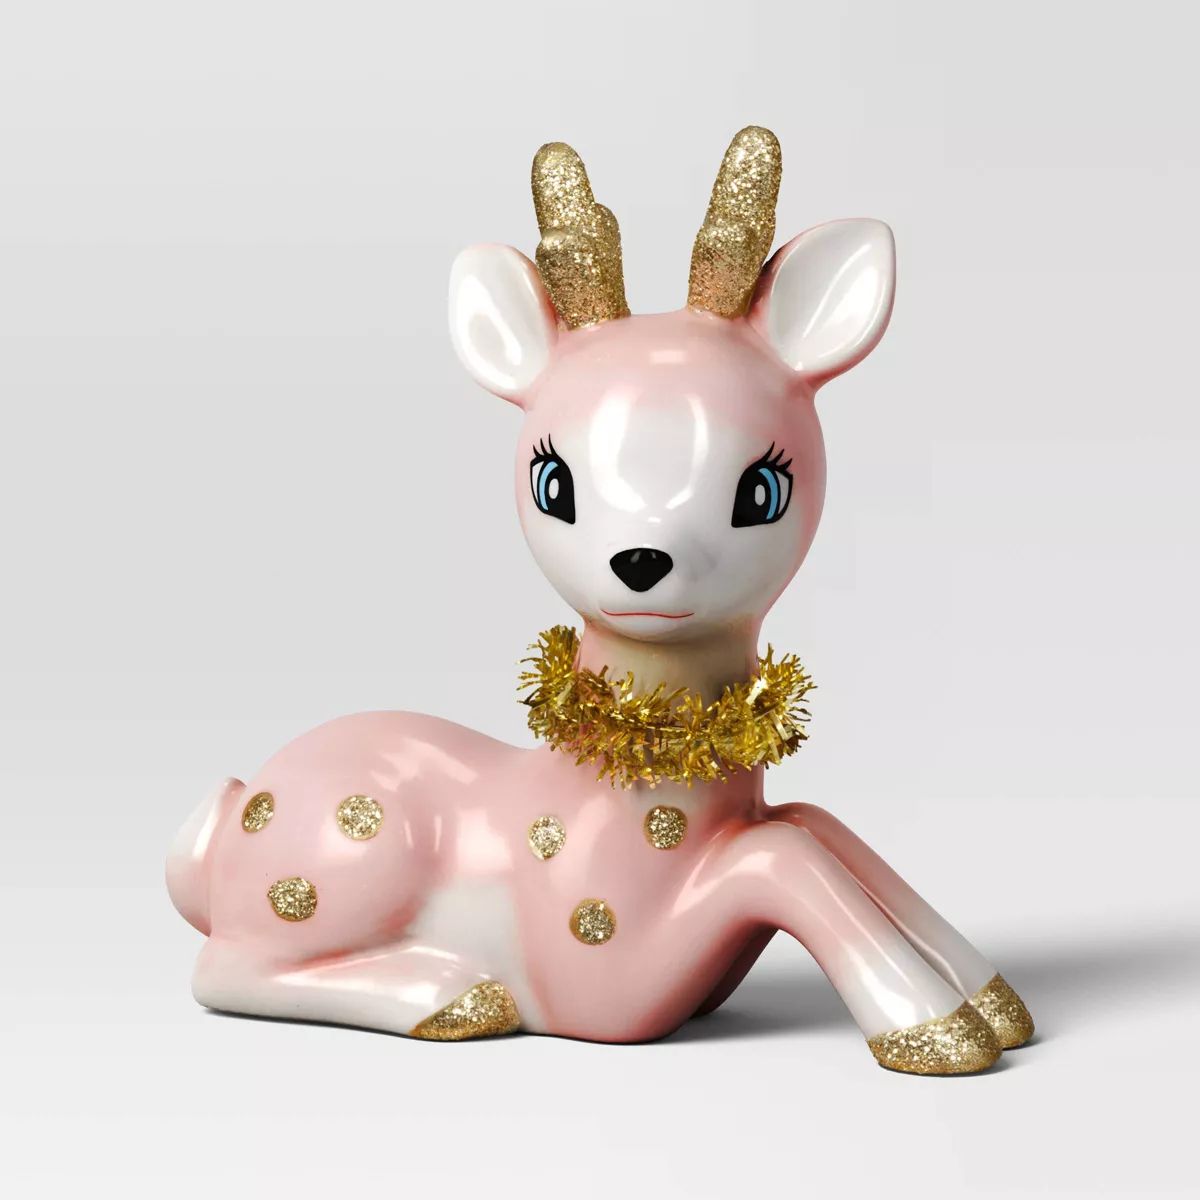 5.25" Ceramic Sitting Reindeer Animal Christmas Figurine - Wondershop™ Pink | Target